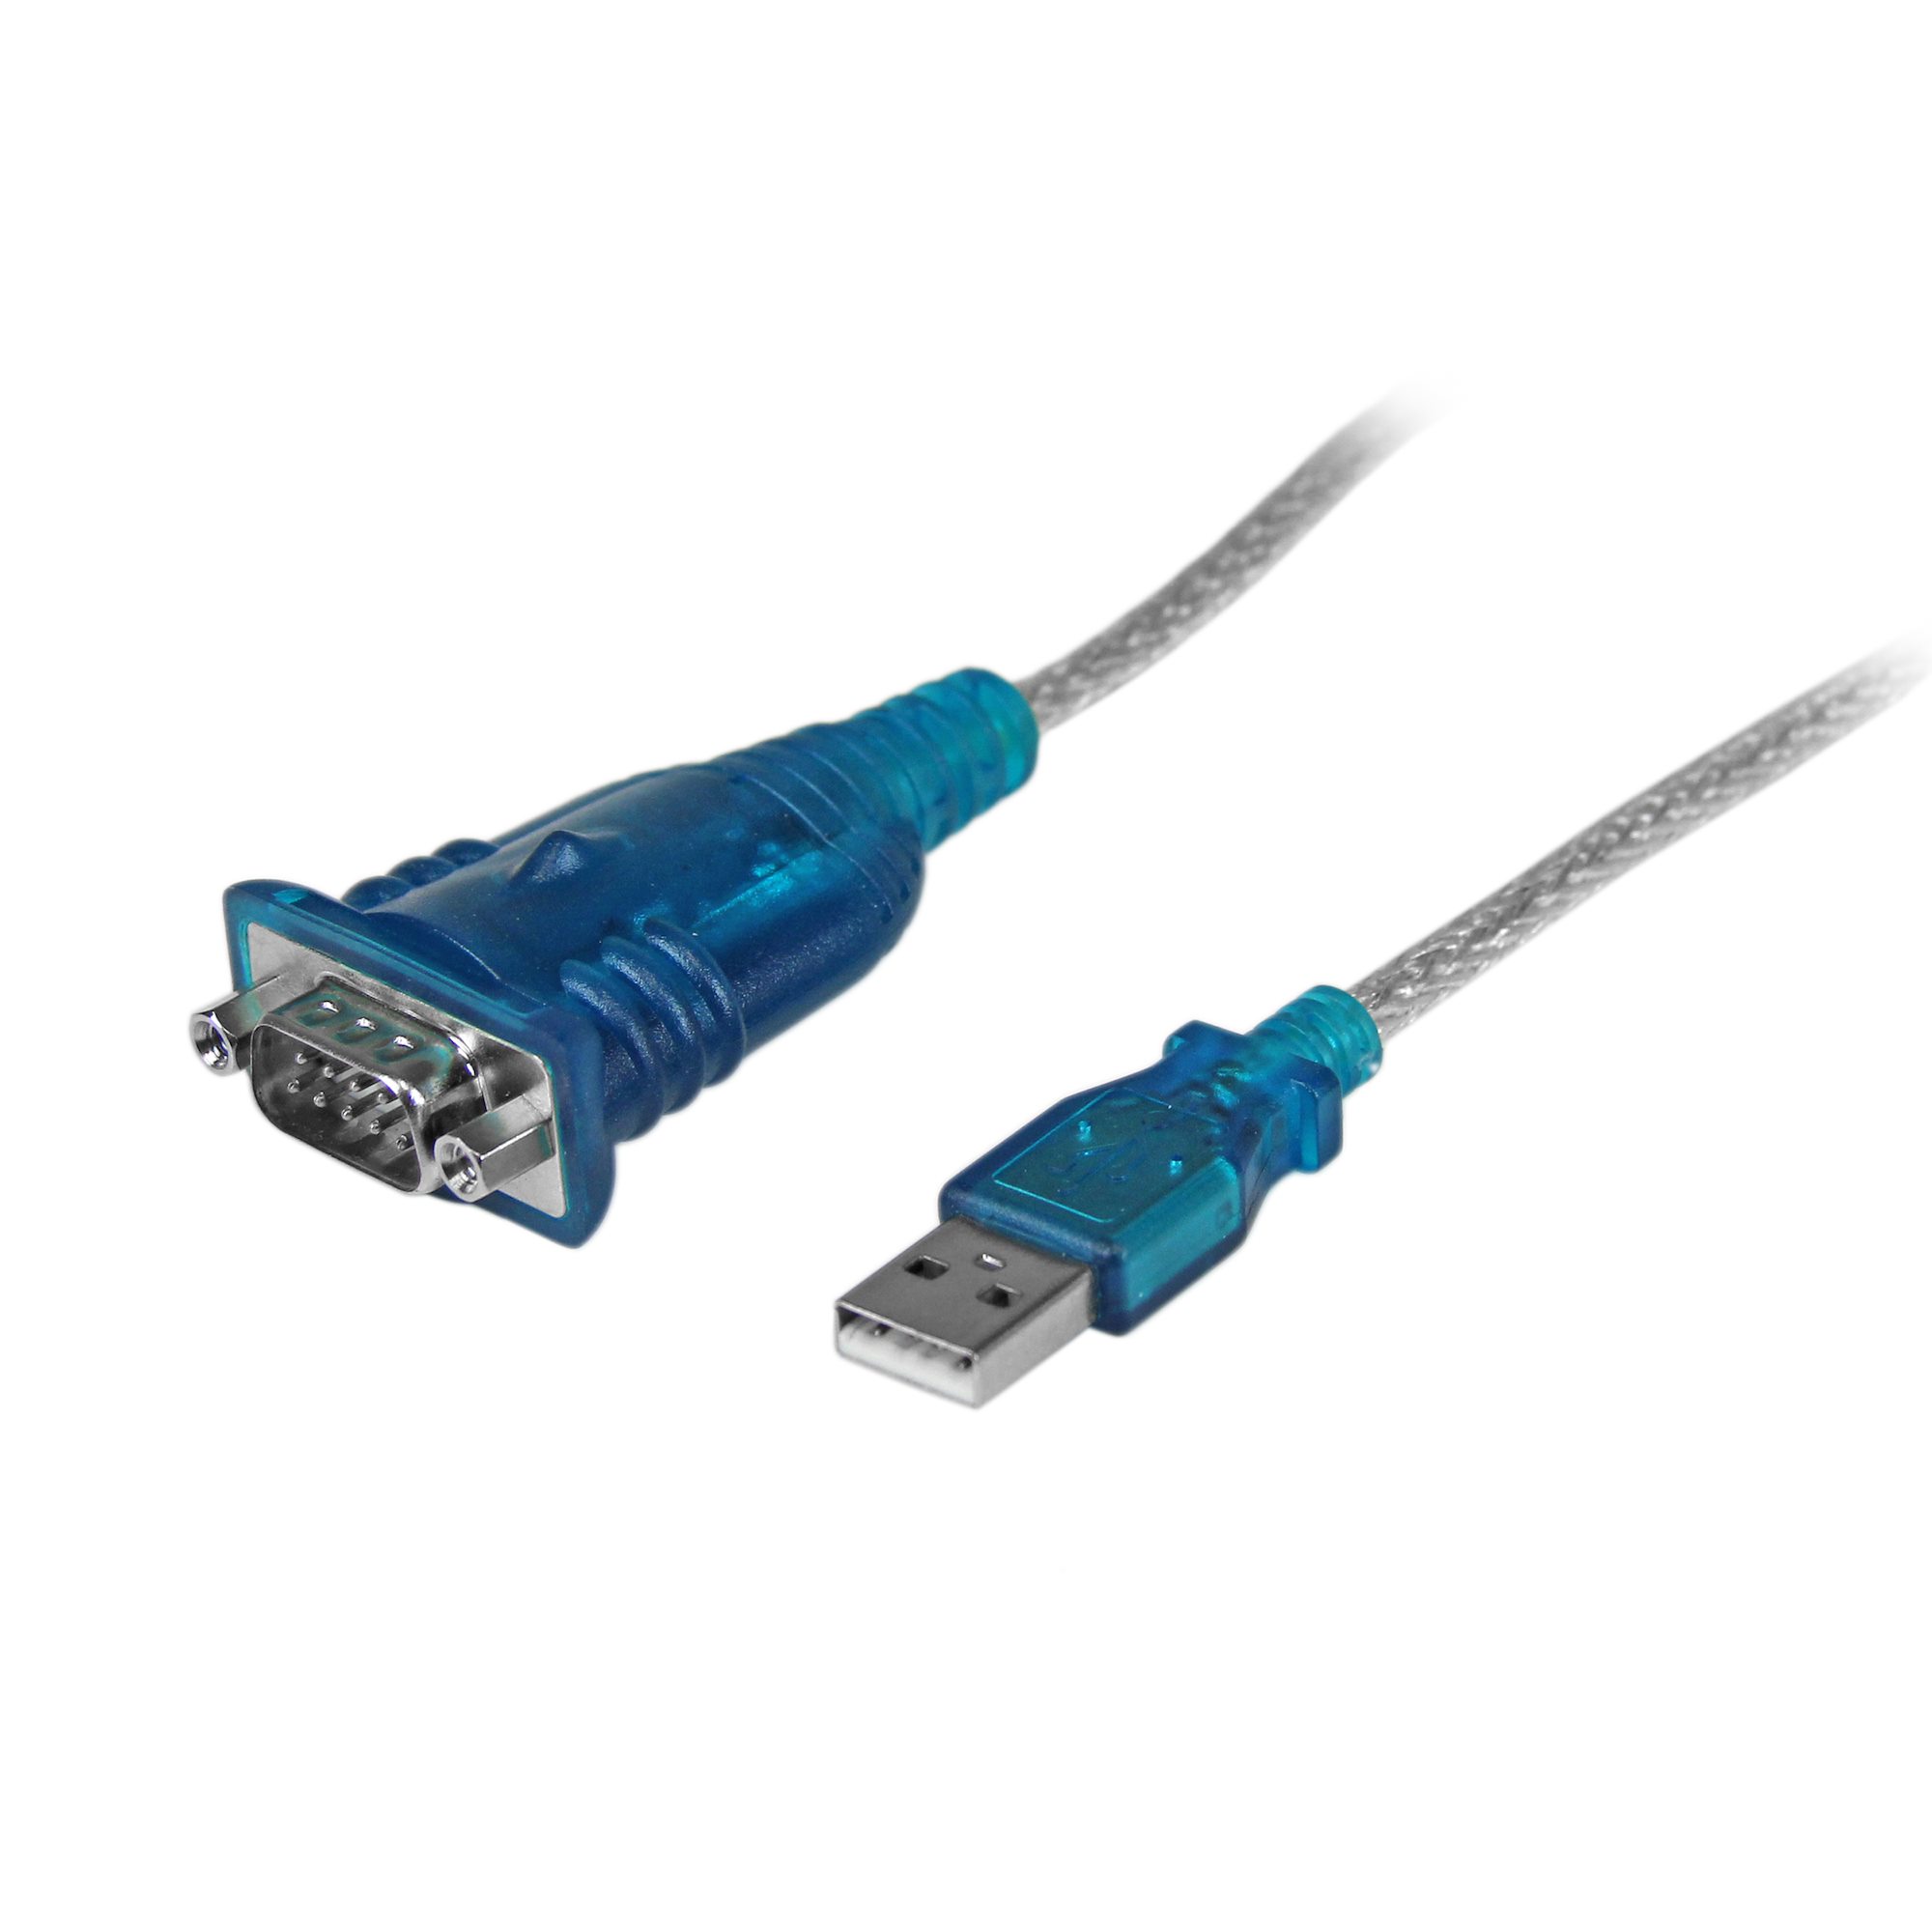 USB 8ポートシリアルRS232C変換ハブ 8x シリアルD-Sub 9ピンハブ デイジーチェーン機能 ラッ